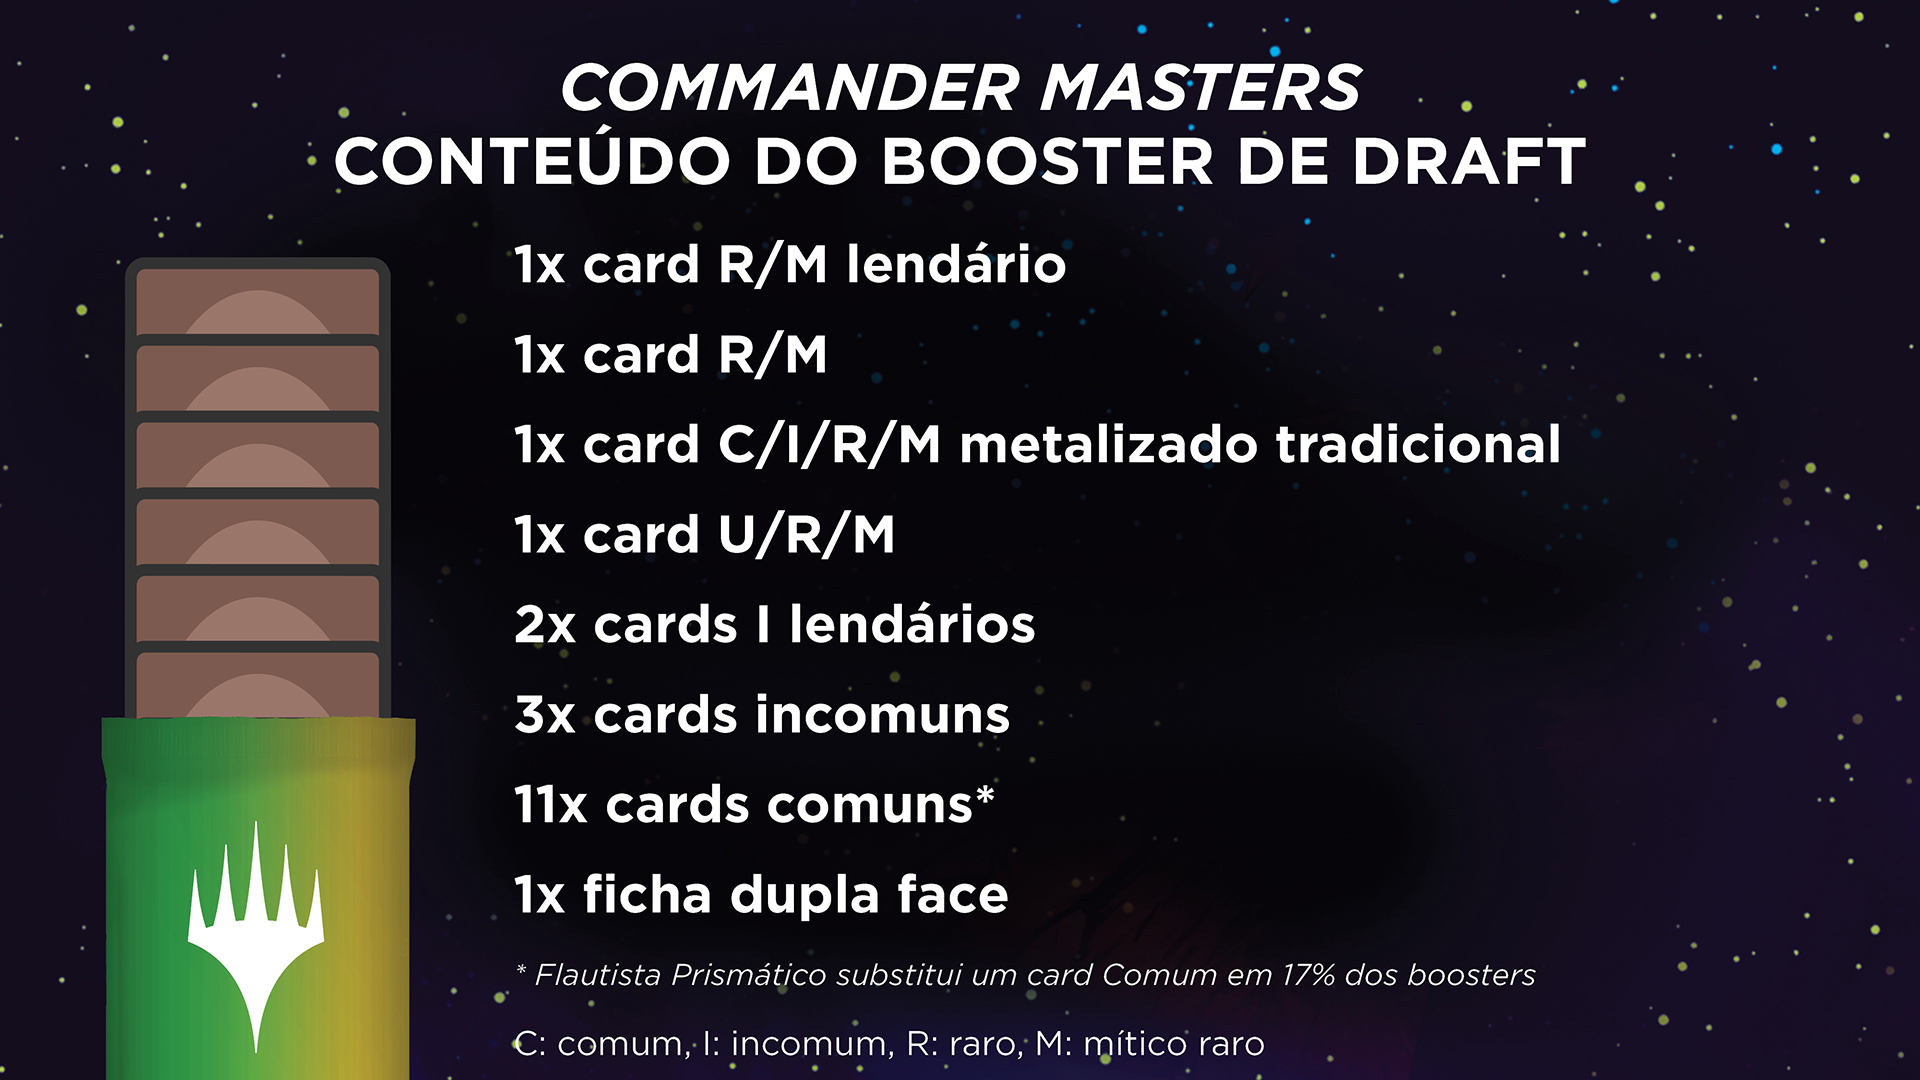 Conteúdo do Booster de Draft de Commander Masters